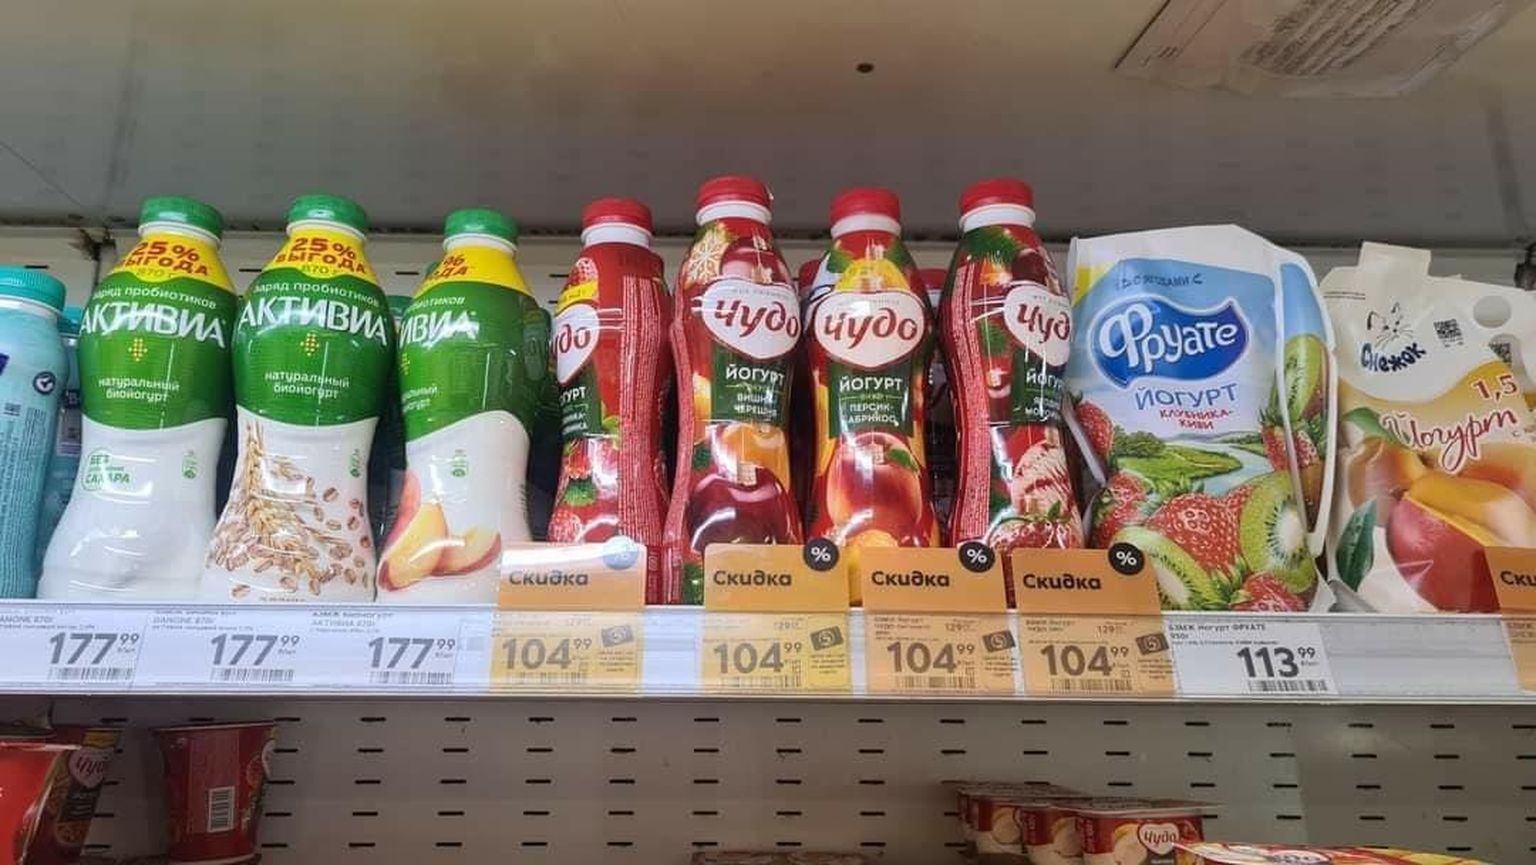 Ka jogurtid maksid enne 80–100 rubla vahemikus, nüüd on hind veidi tõusnud.